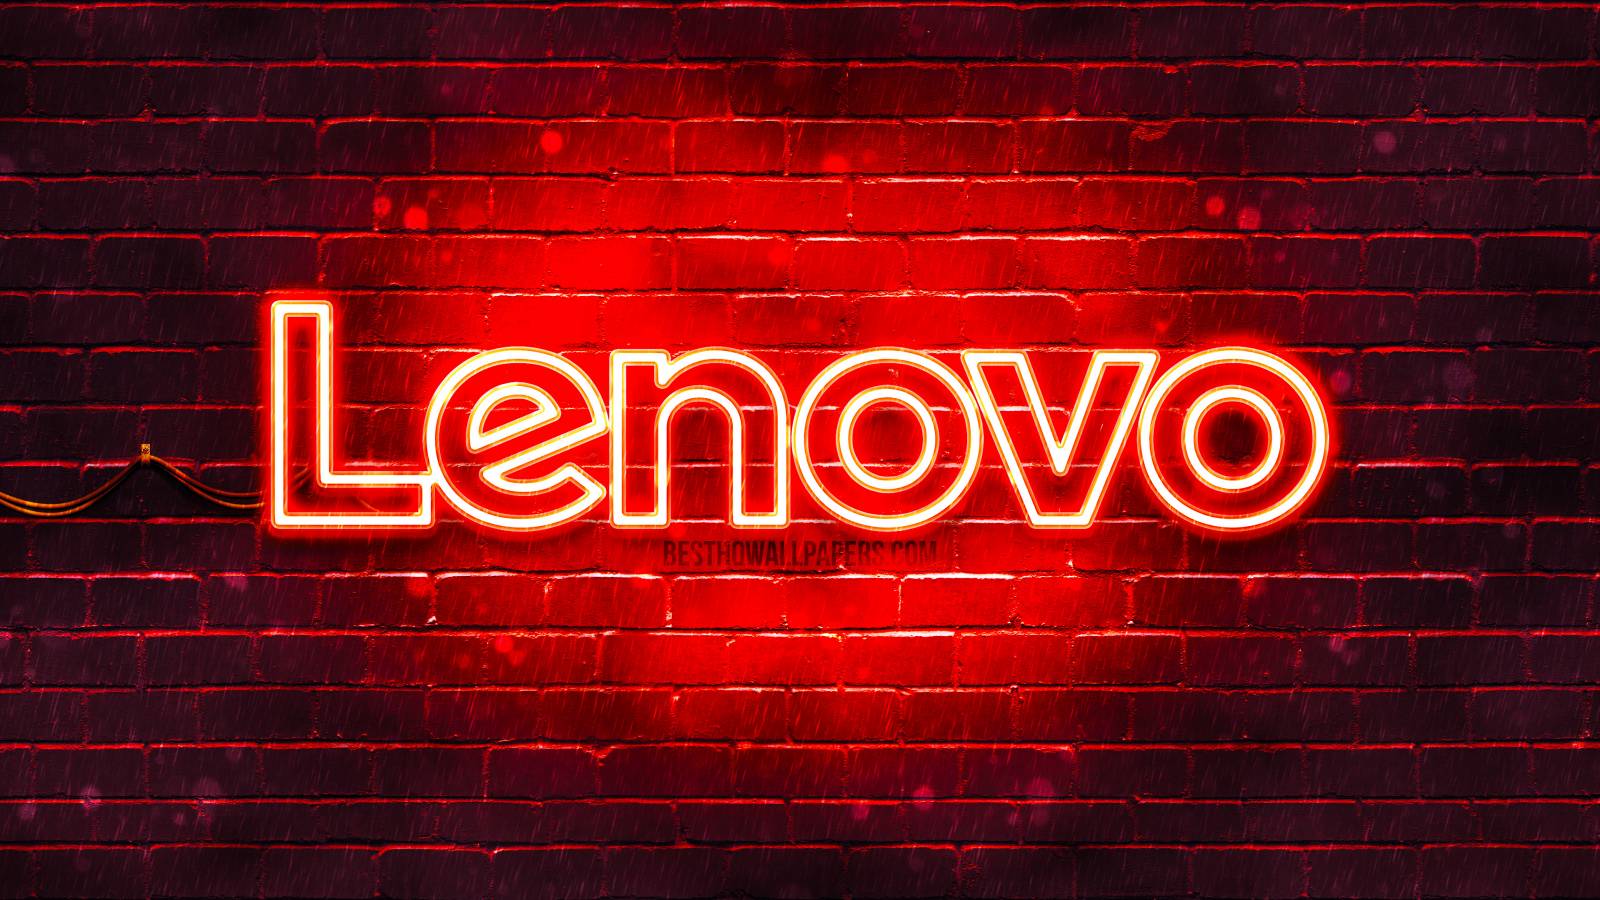 Lenovo nouveaux produits roumanie